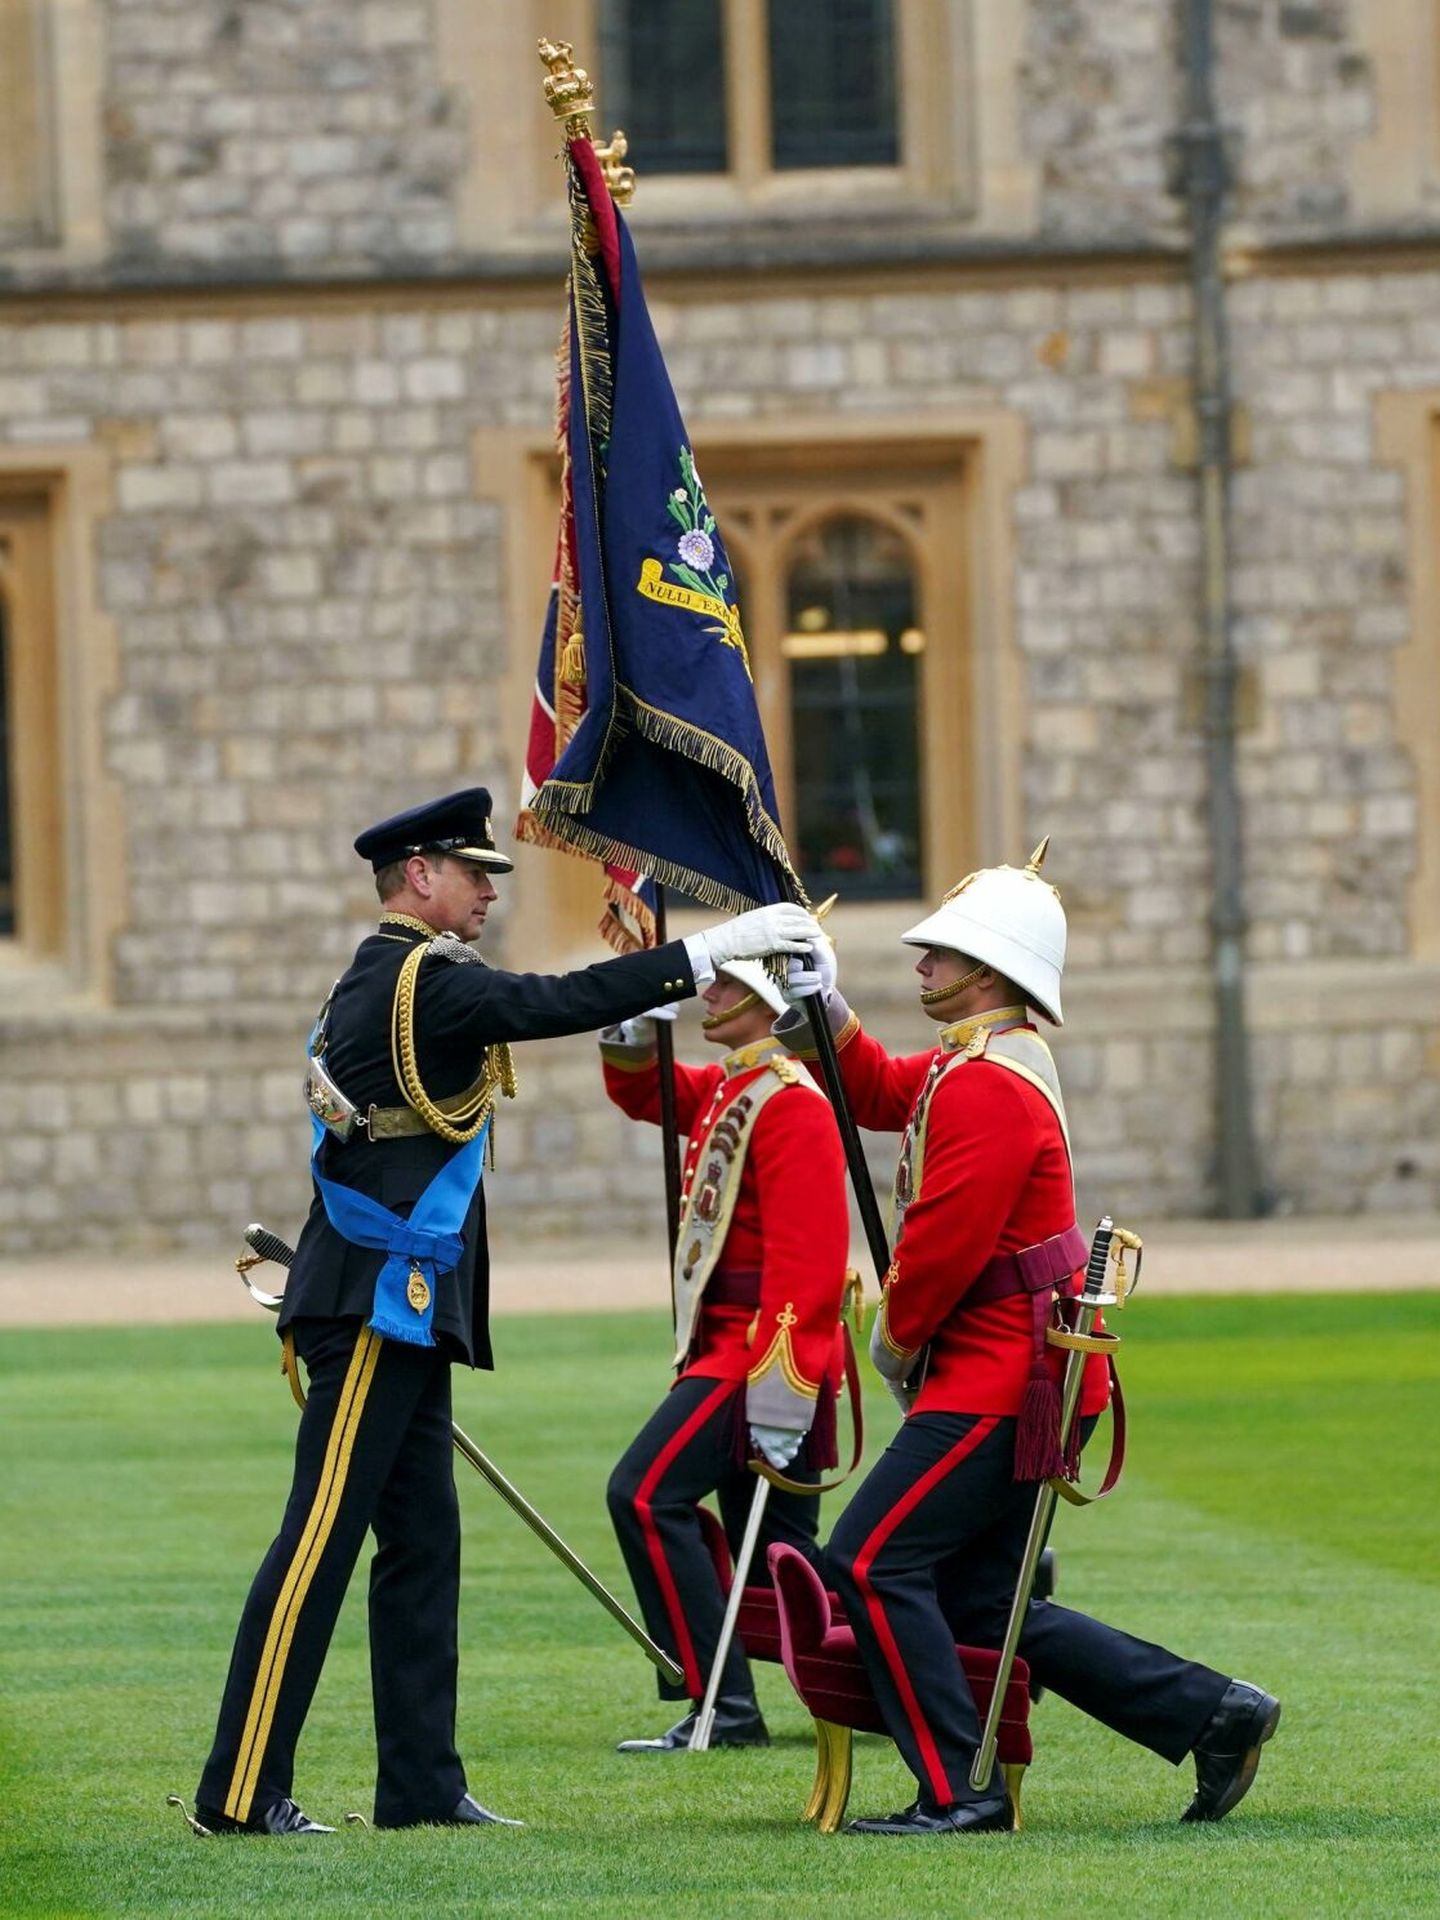 El conde de Wessex presentó los nuevos colores del Real Regimiento de Gibraltar el pasado 31 de marzo en Windsor. (Reuters/Parsons)